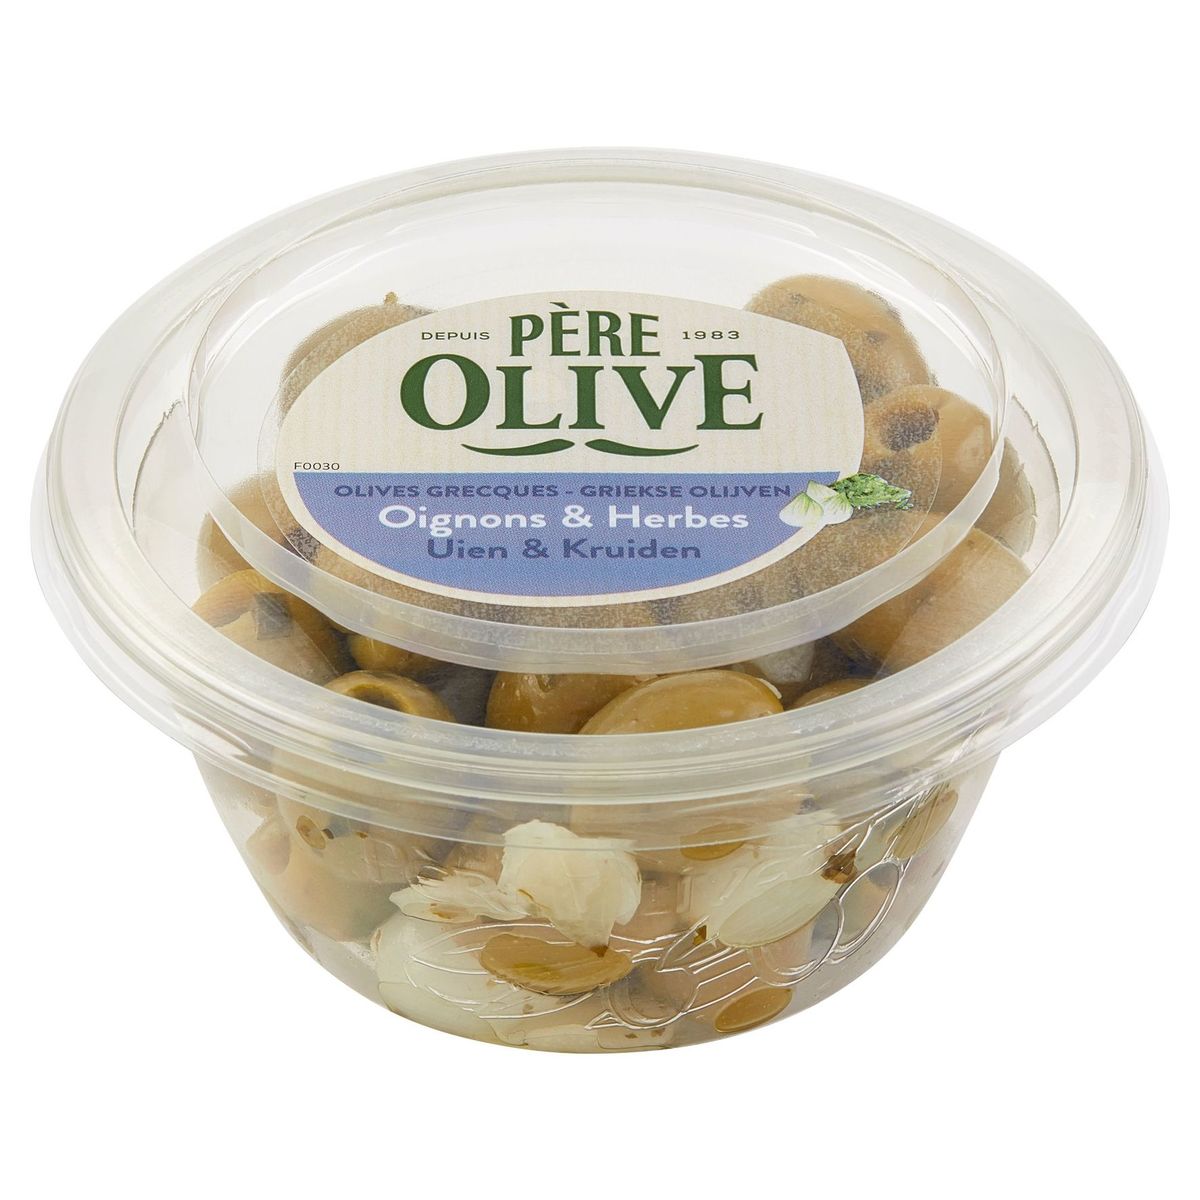 Père Olive Olives Grecques - Oignons & Herbes 150 g